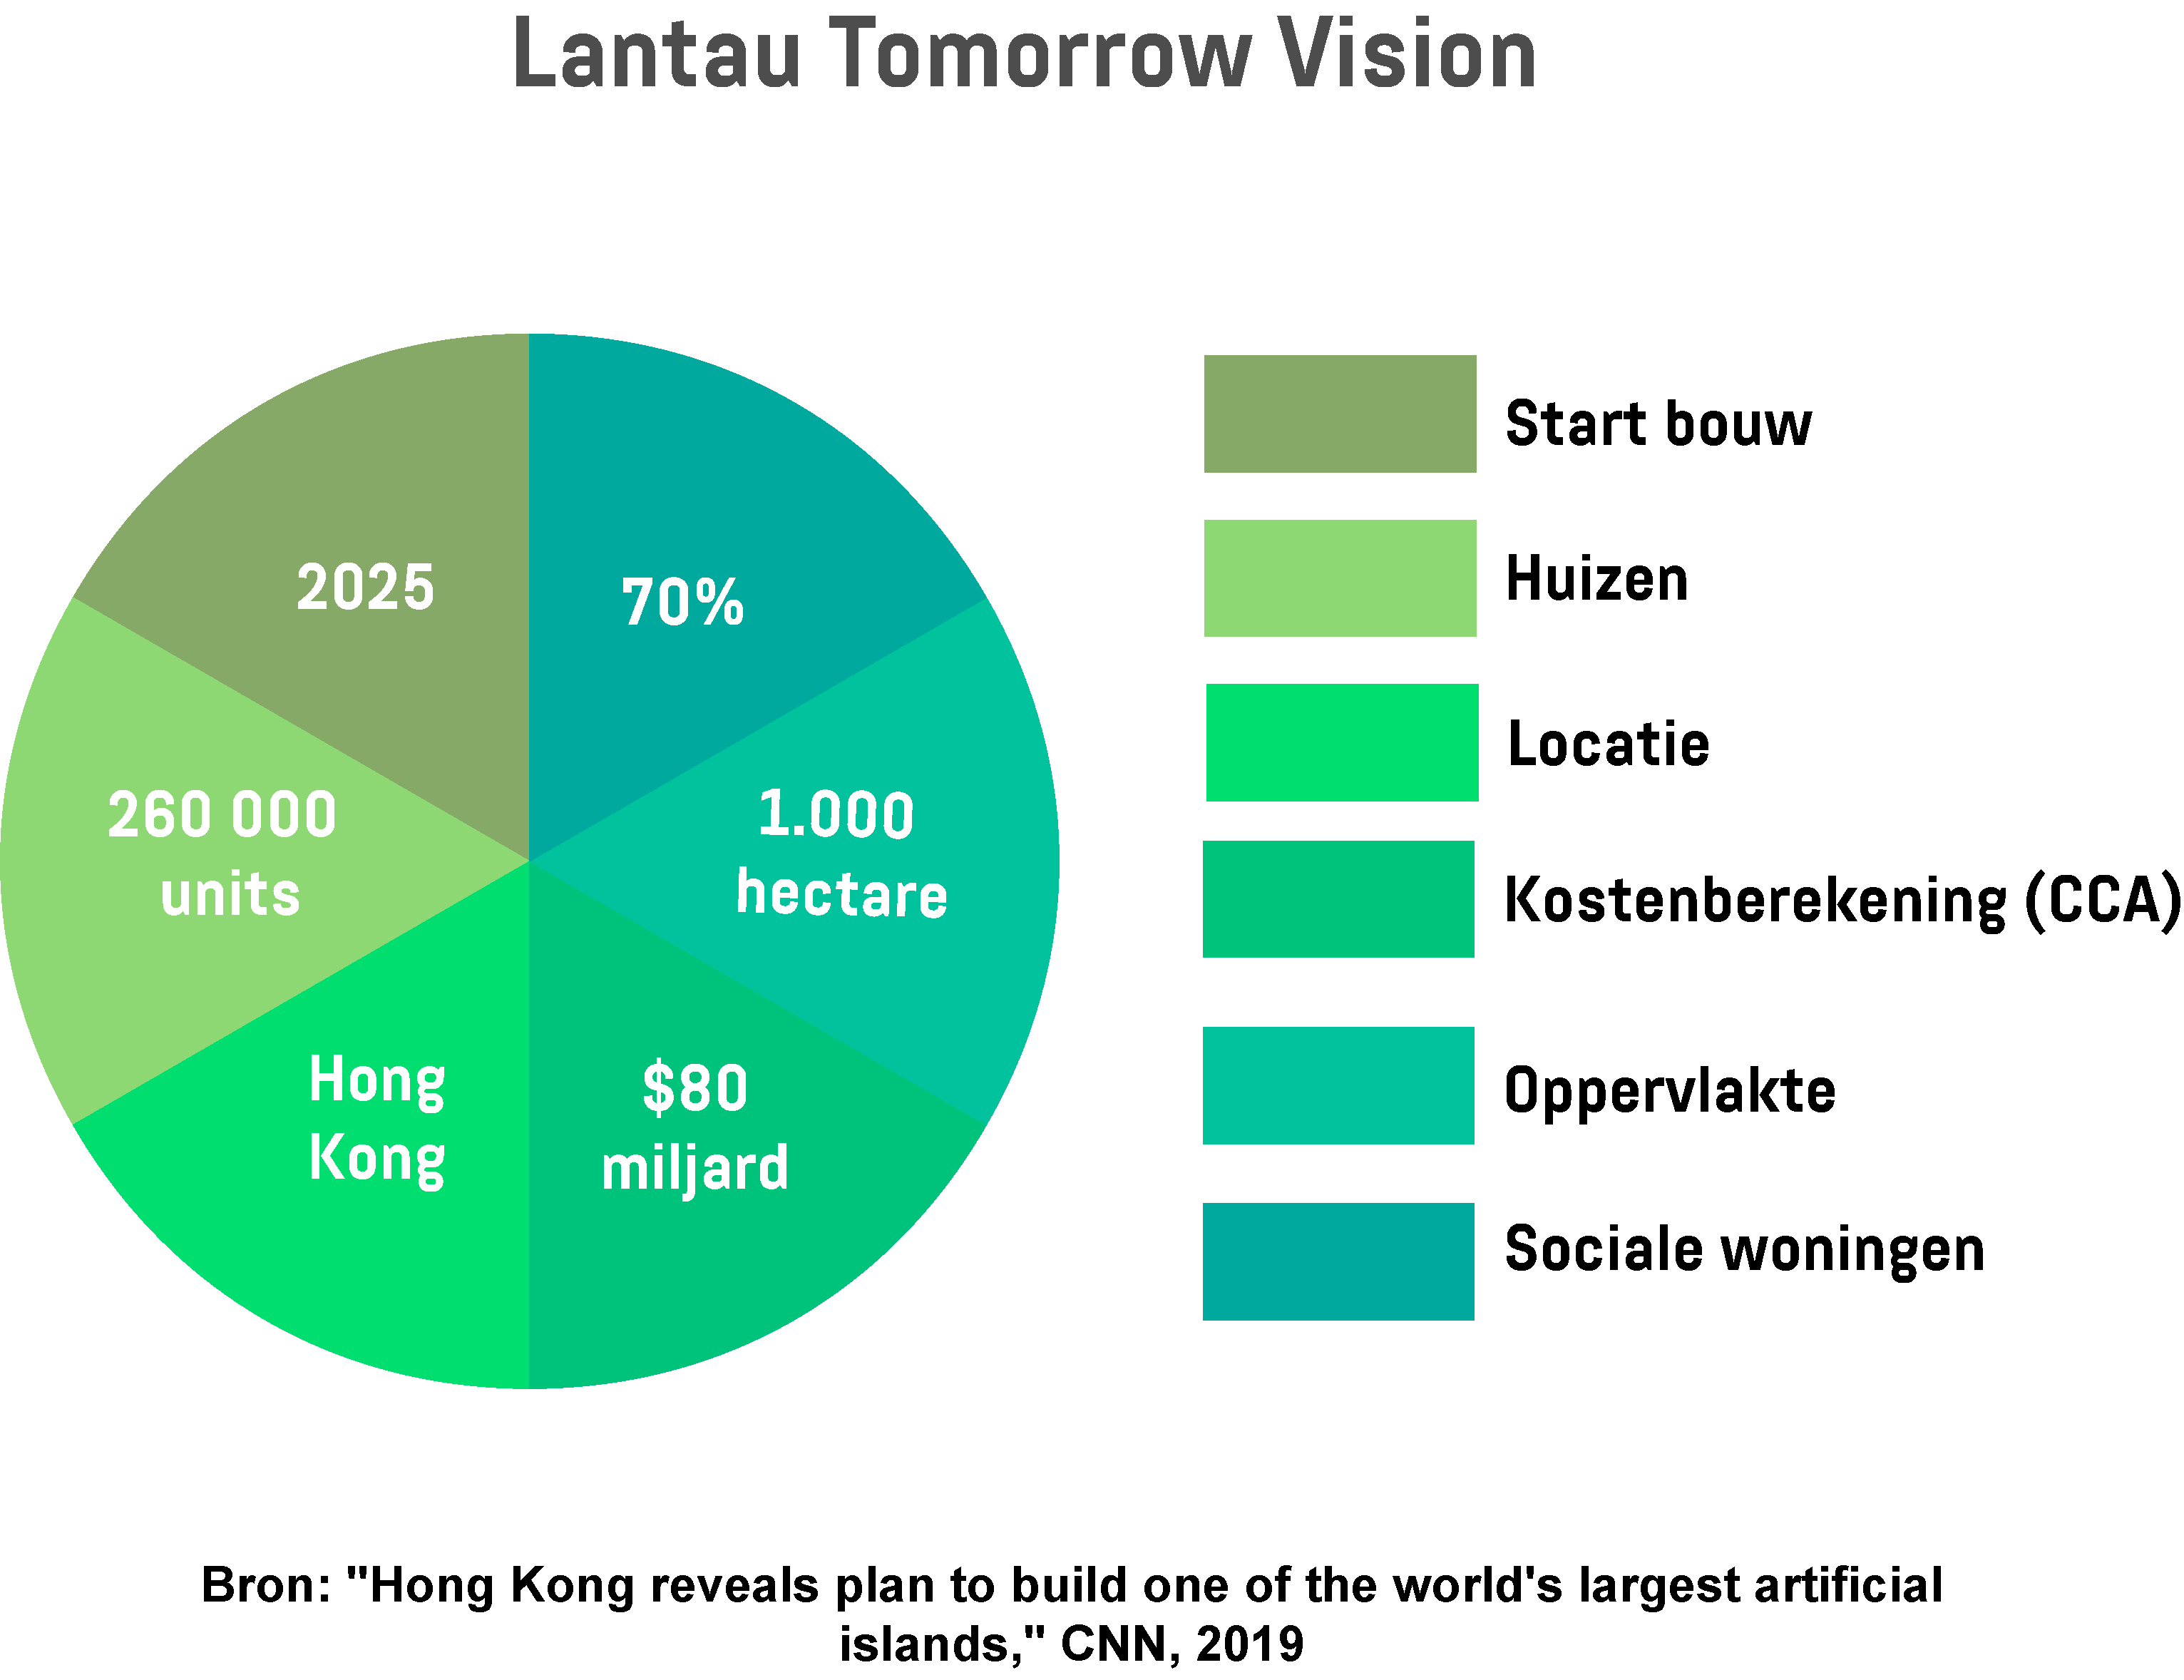  Cirkeldiagram met de belangrijkste informatie over het Lantau Tomorrow Vision-project.